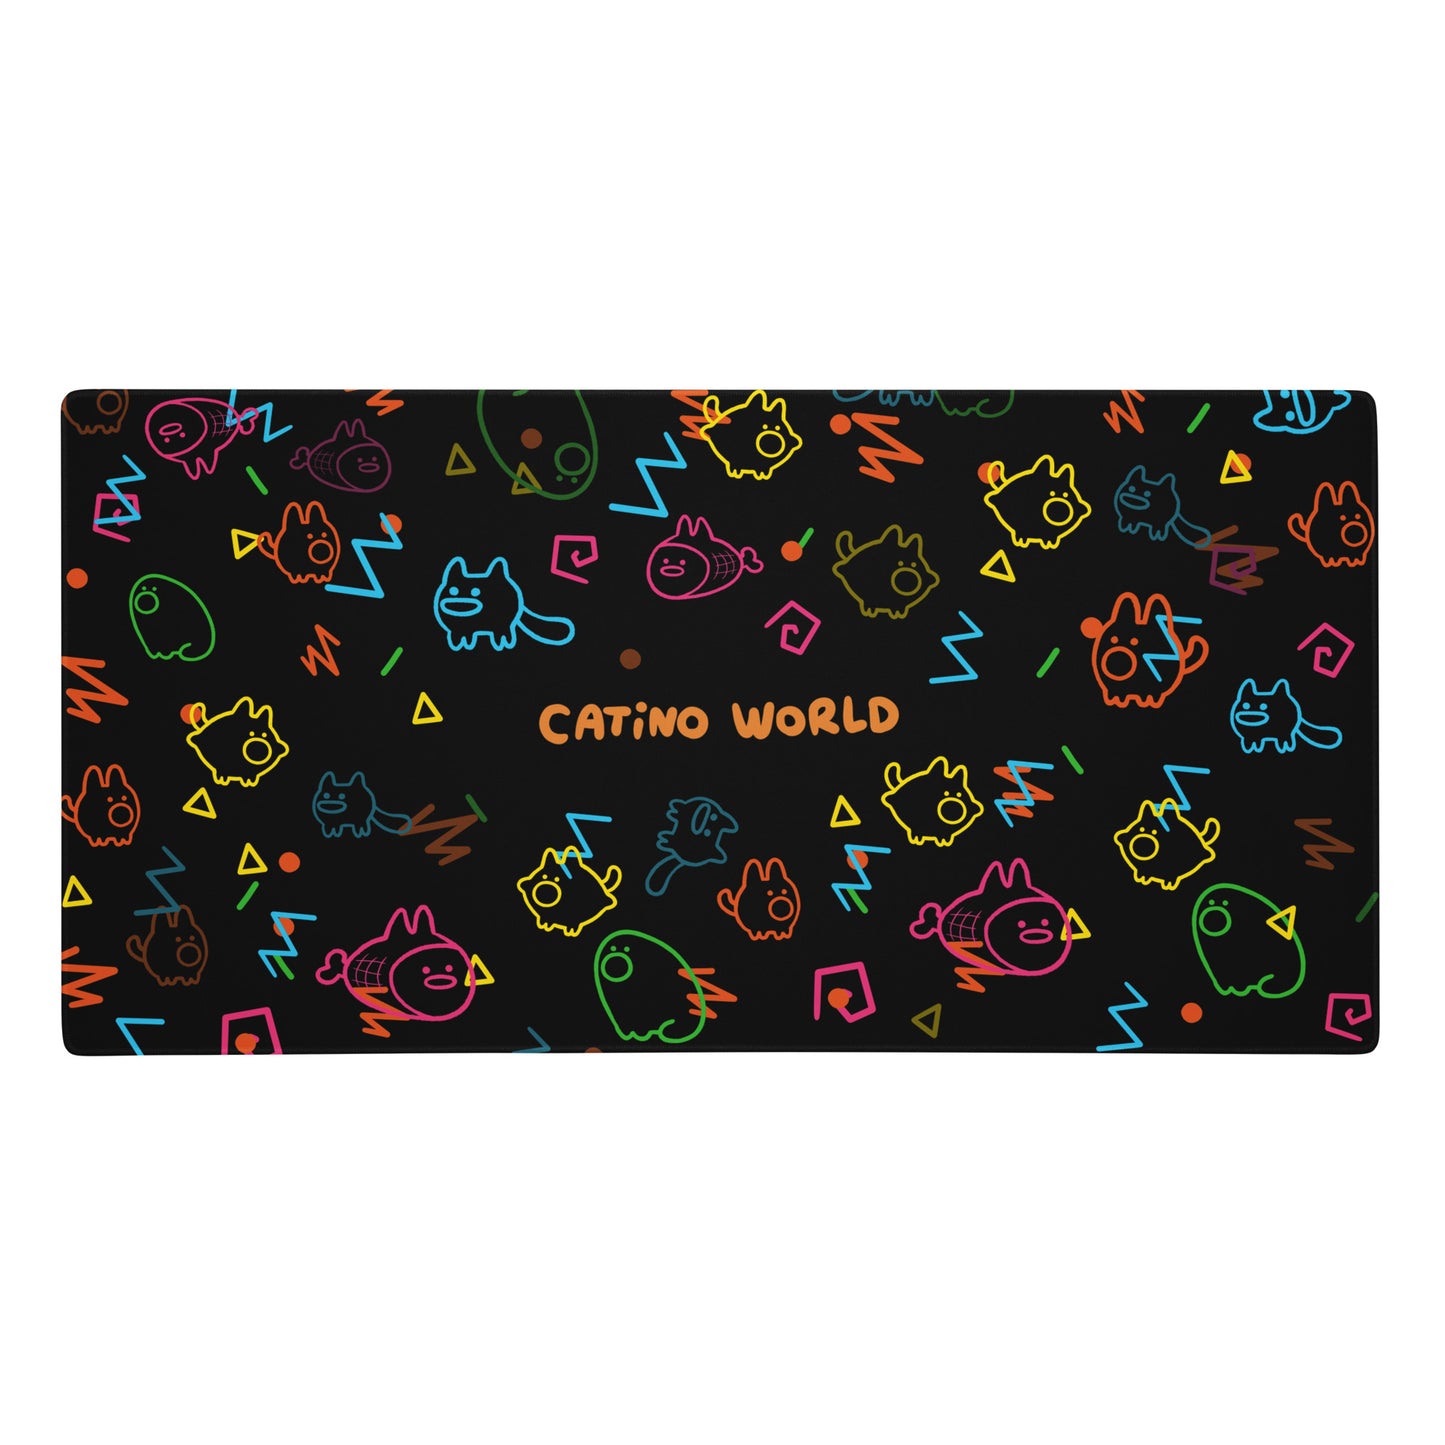 Catino Arcade Gaming Mouse Pad!